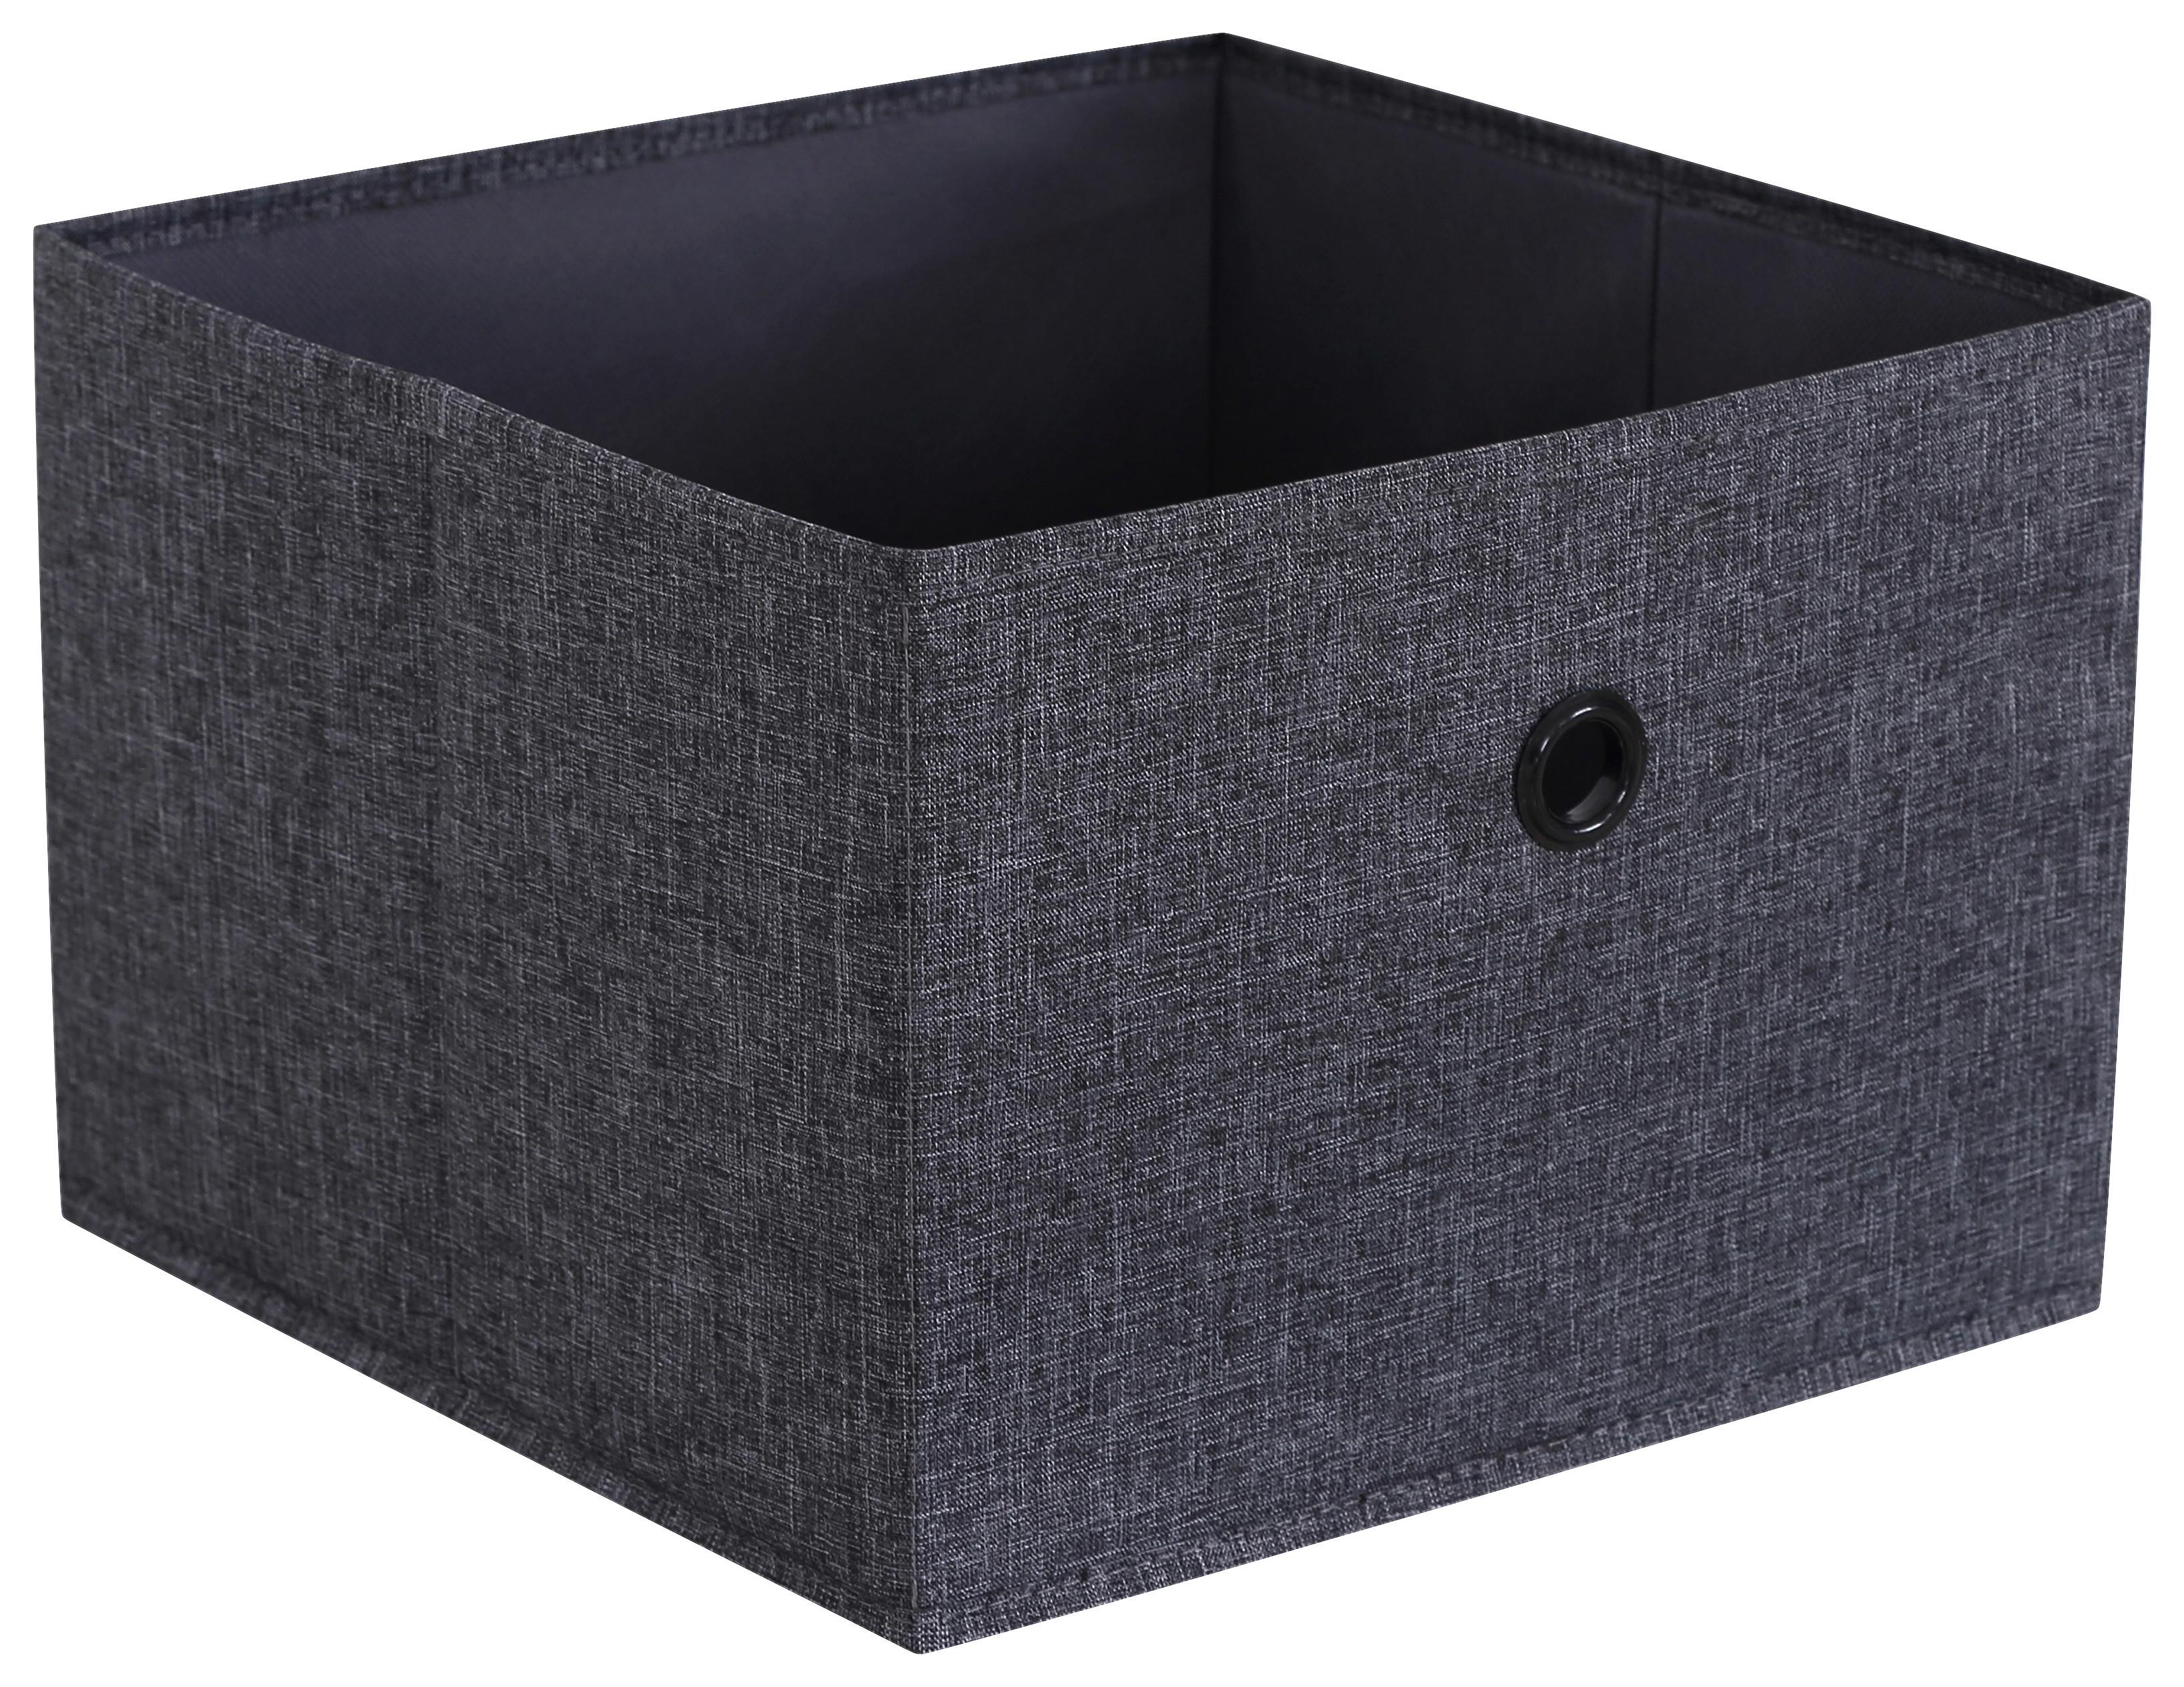 Aufbewahrungsbox Nahla in Grau - Grau, Karton/Textil (29/20/29cm) - Modern Living